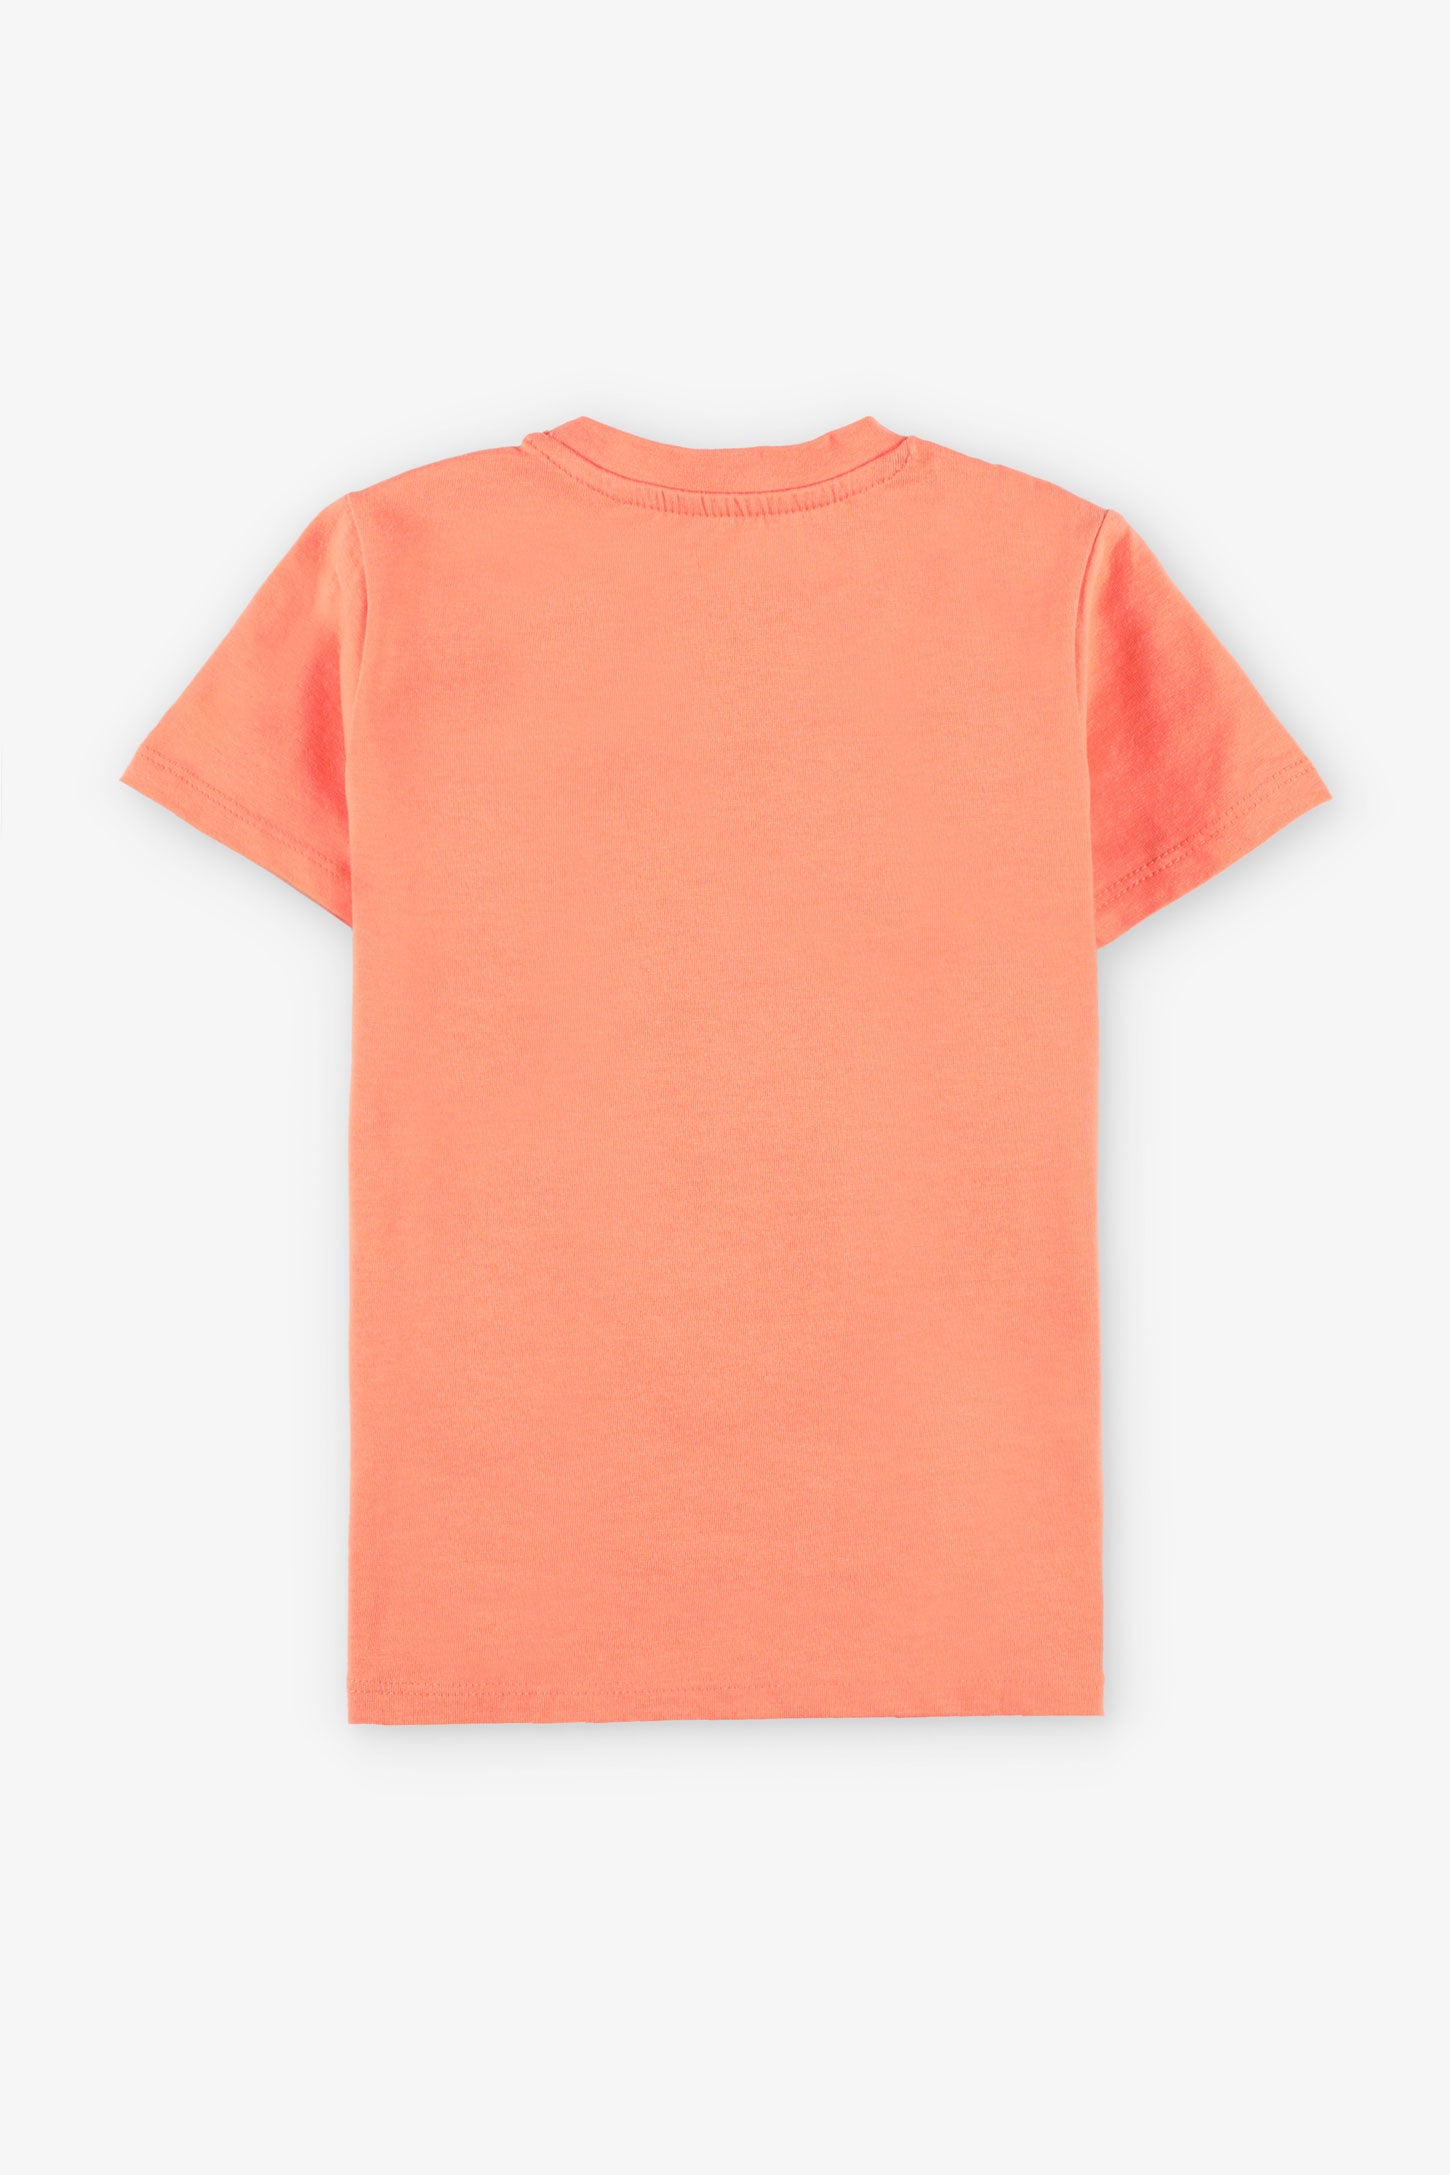 T-shirt imprimé en coton, 2/20$ - Enfant garçon && CORAIL